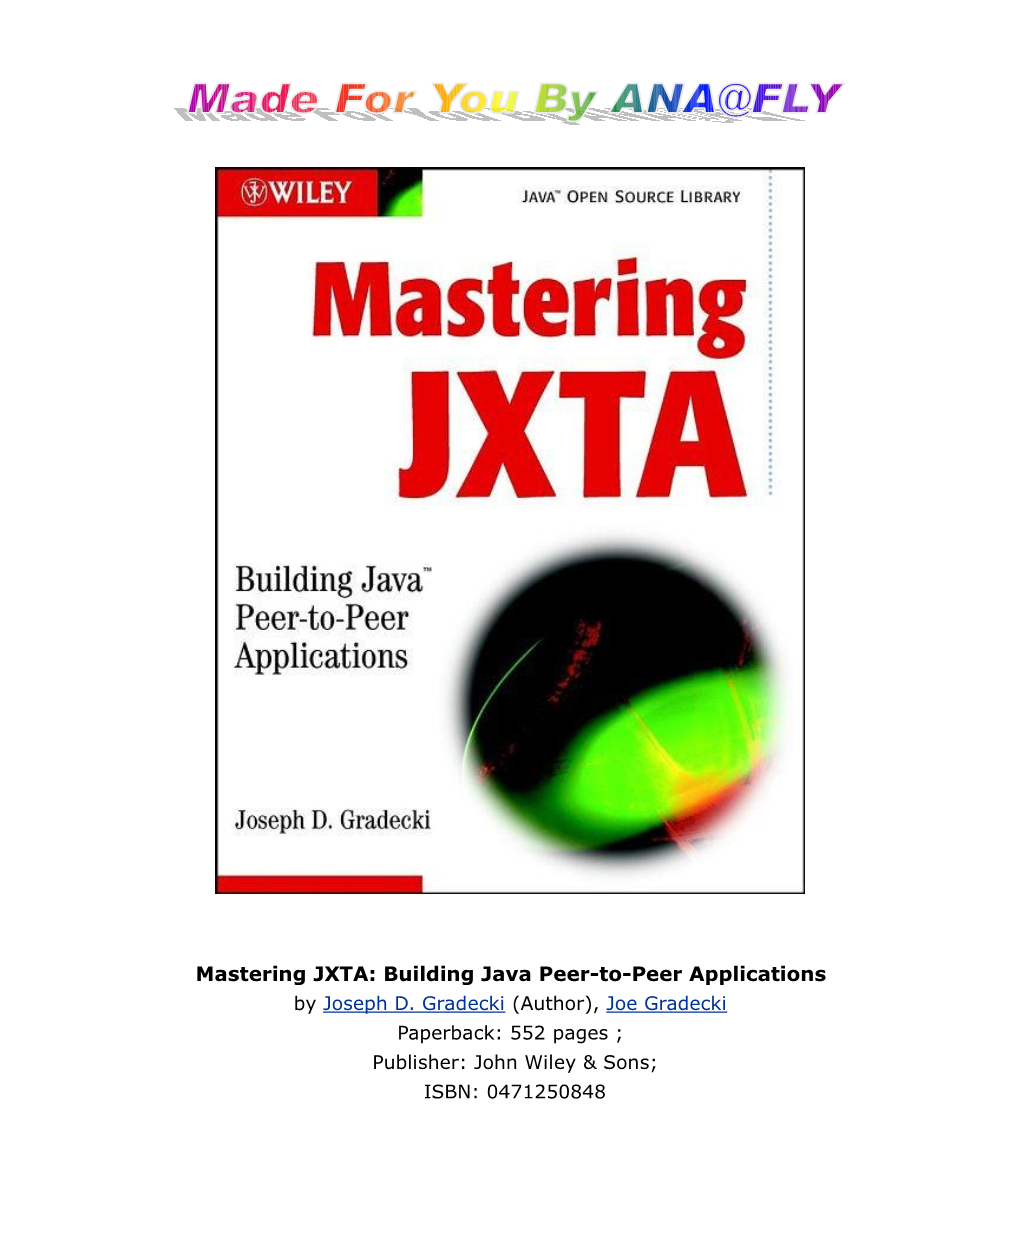 Mastering JXTA: Building Java Peer-To-Peer Applications by Joseph D